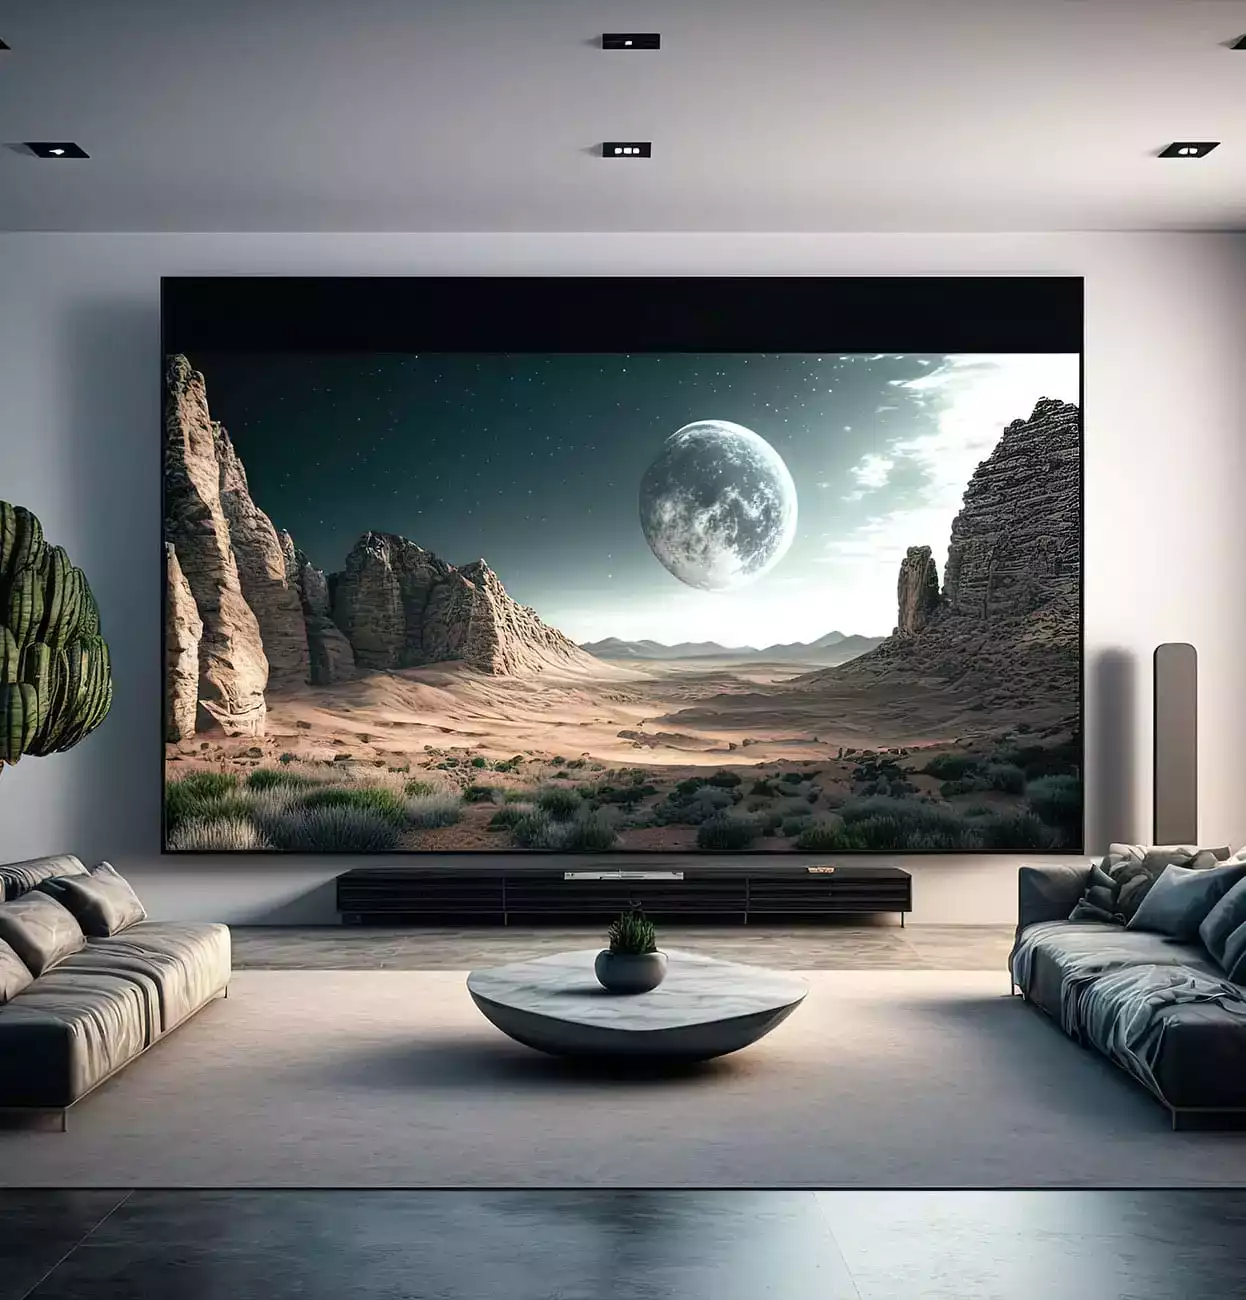 Μια τεράστια τηλεόραση στον τοίχο ενός σαλονιού σε σπίτι.